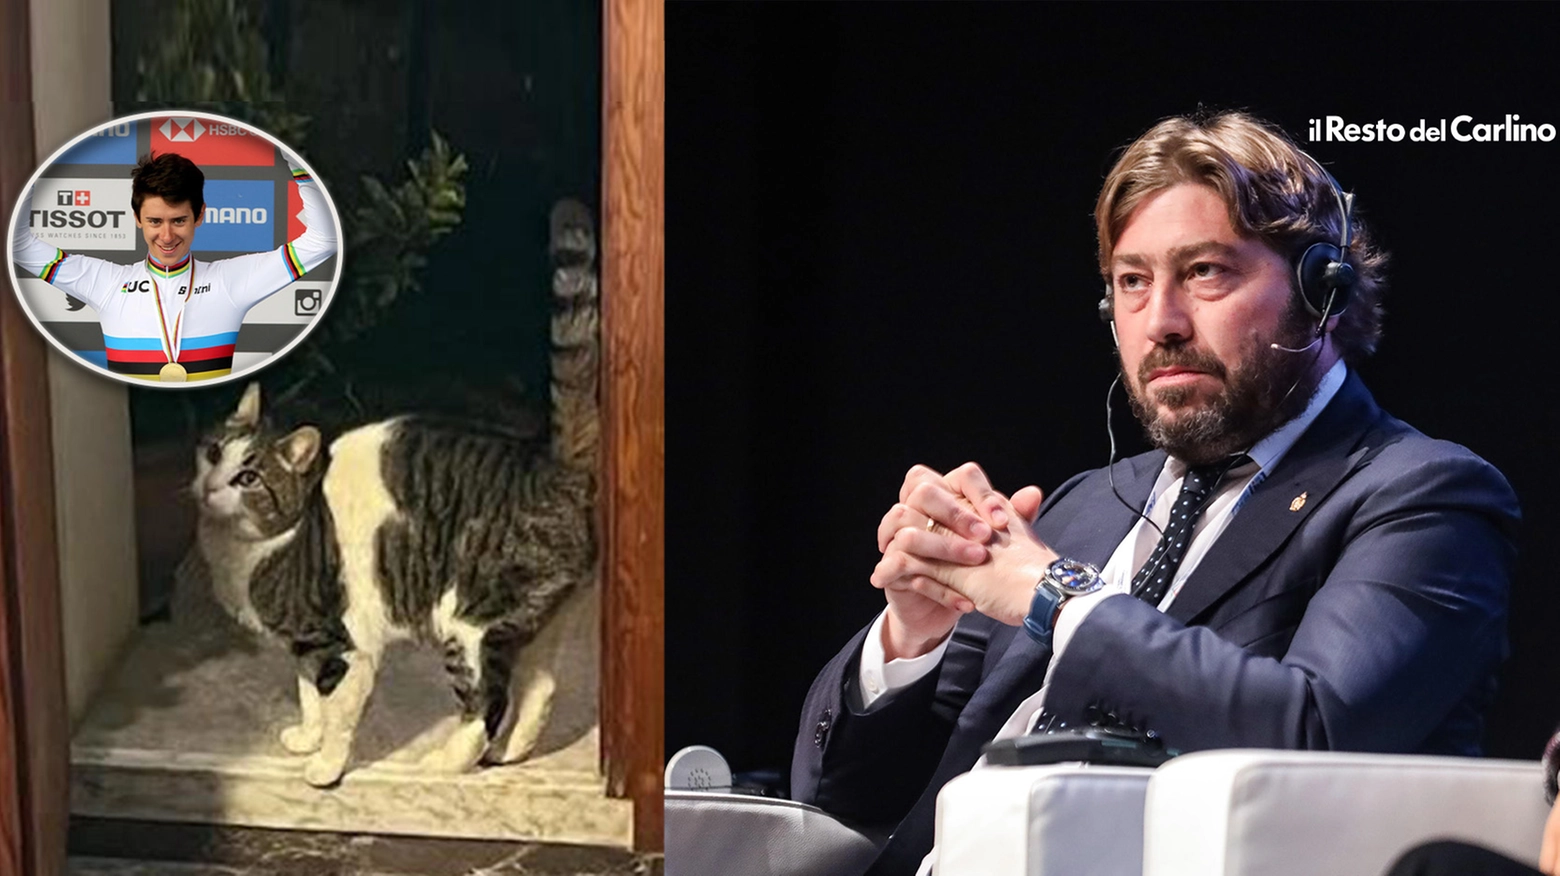 Il ministro al Turismo di San Marino Federico Pedini Amati, a destra. A sinistra, il gatto ucciso. Nel tondo, Antonio Tiberi